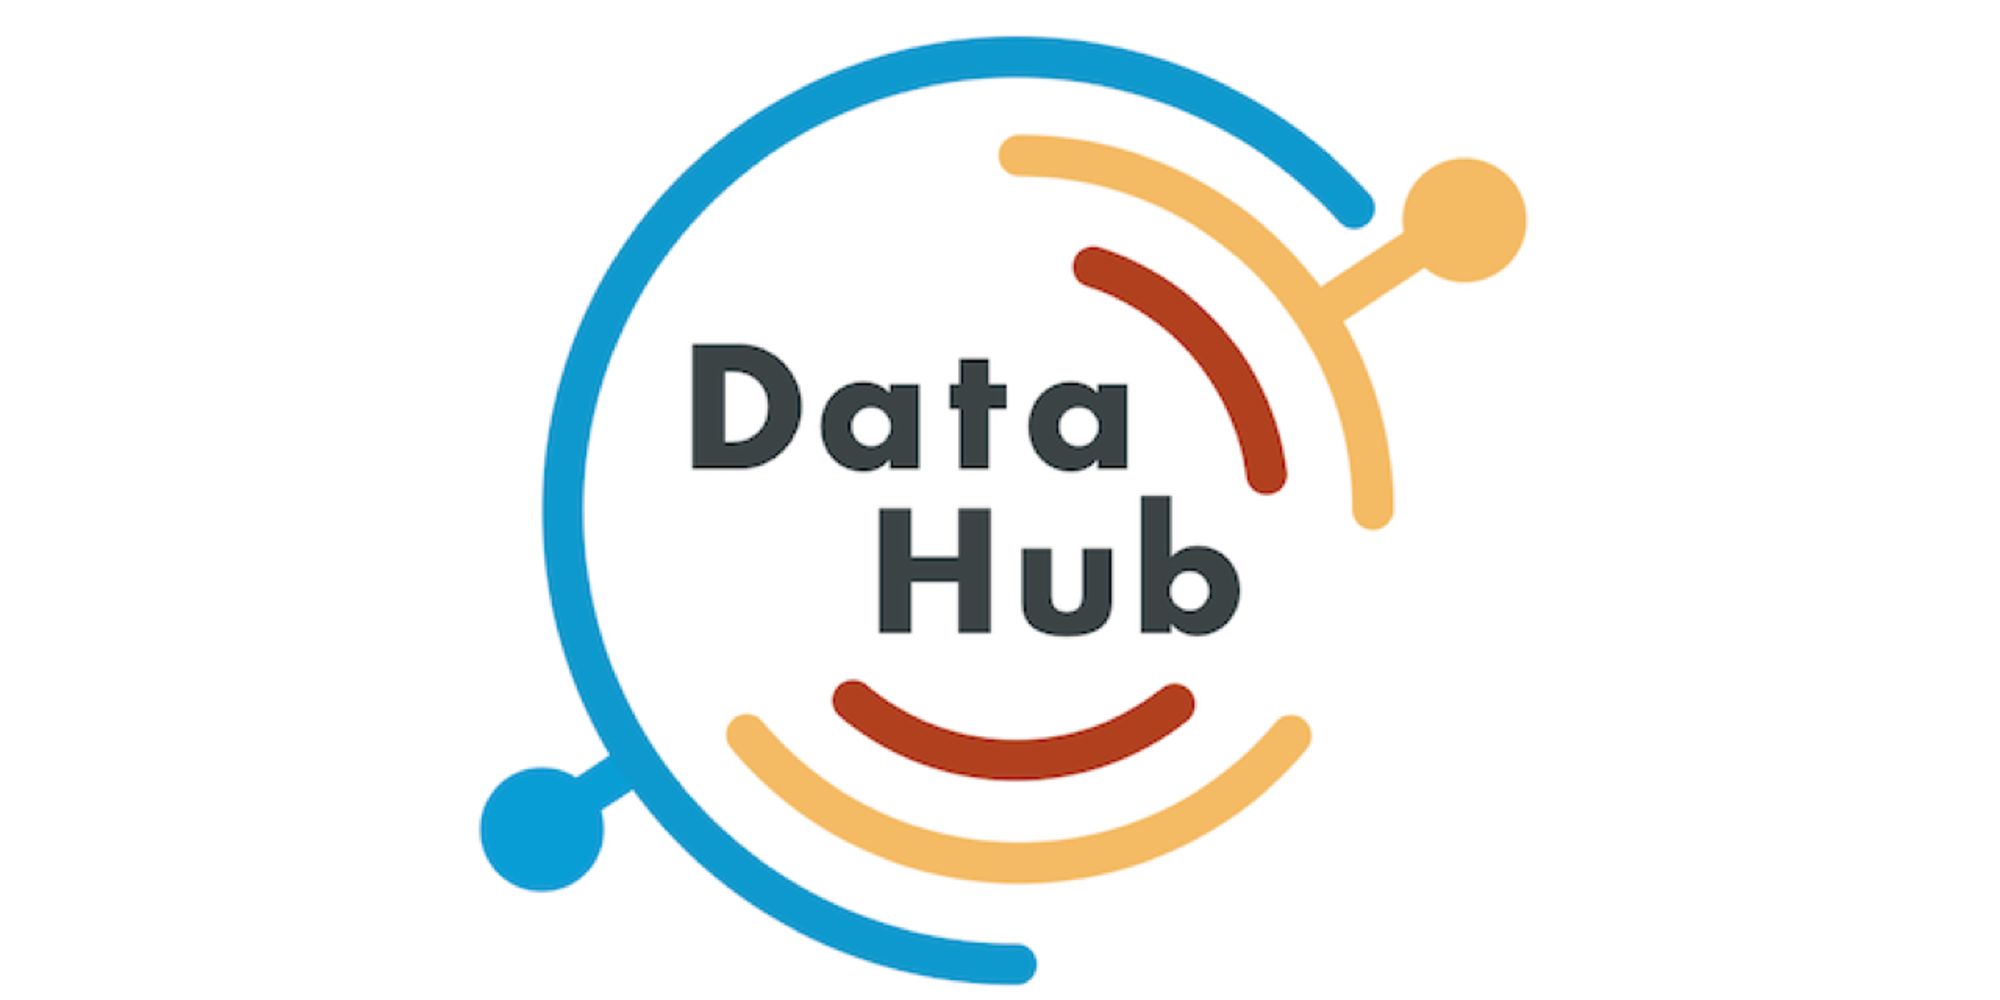 datahub/features.md at master · linkedin/datahub